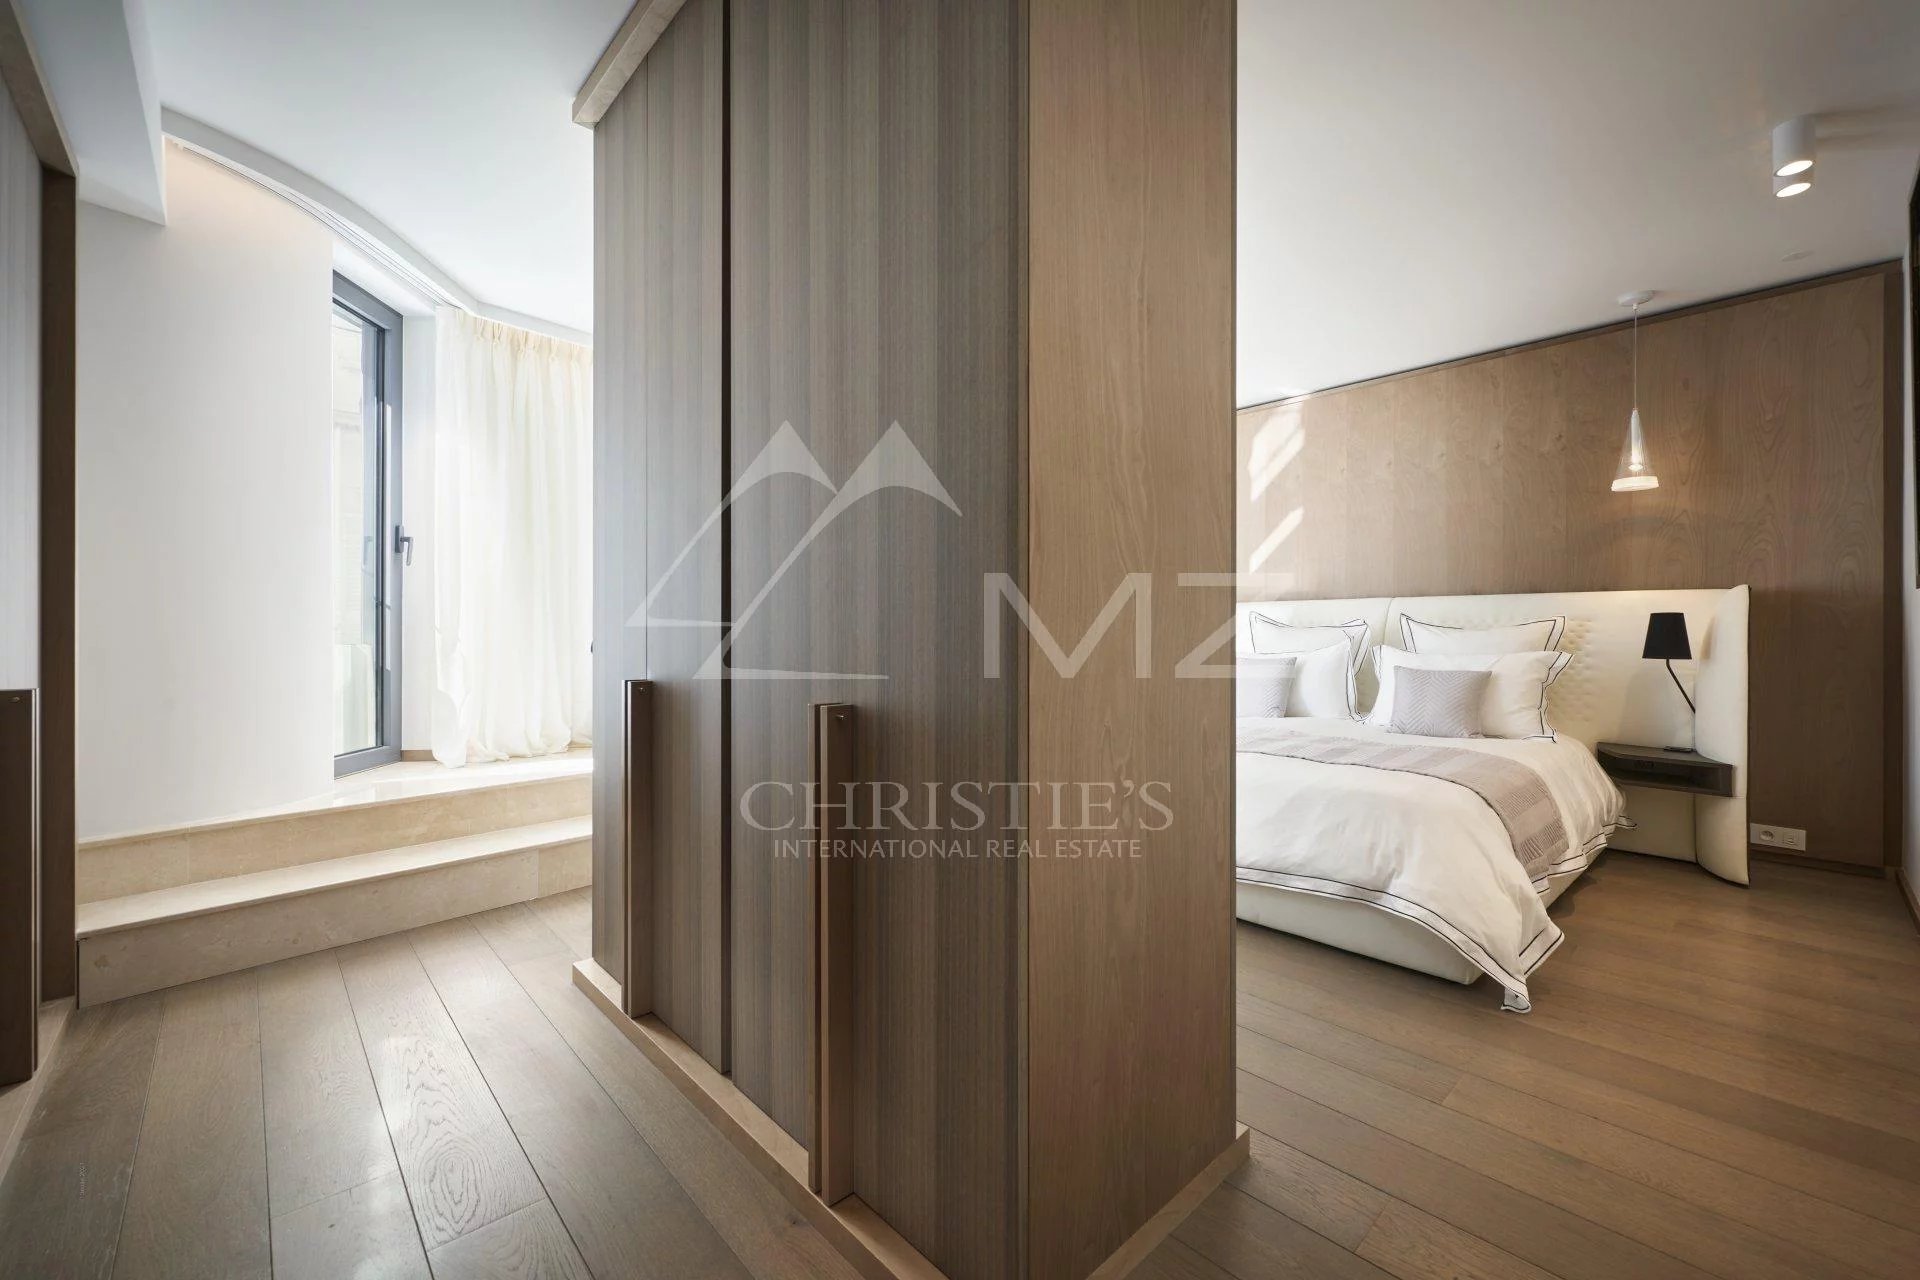 Cannes - Croisette - Wohnung mit 3 Schlafzimmern